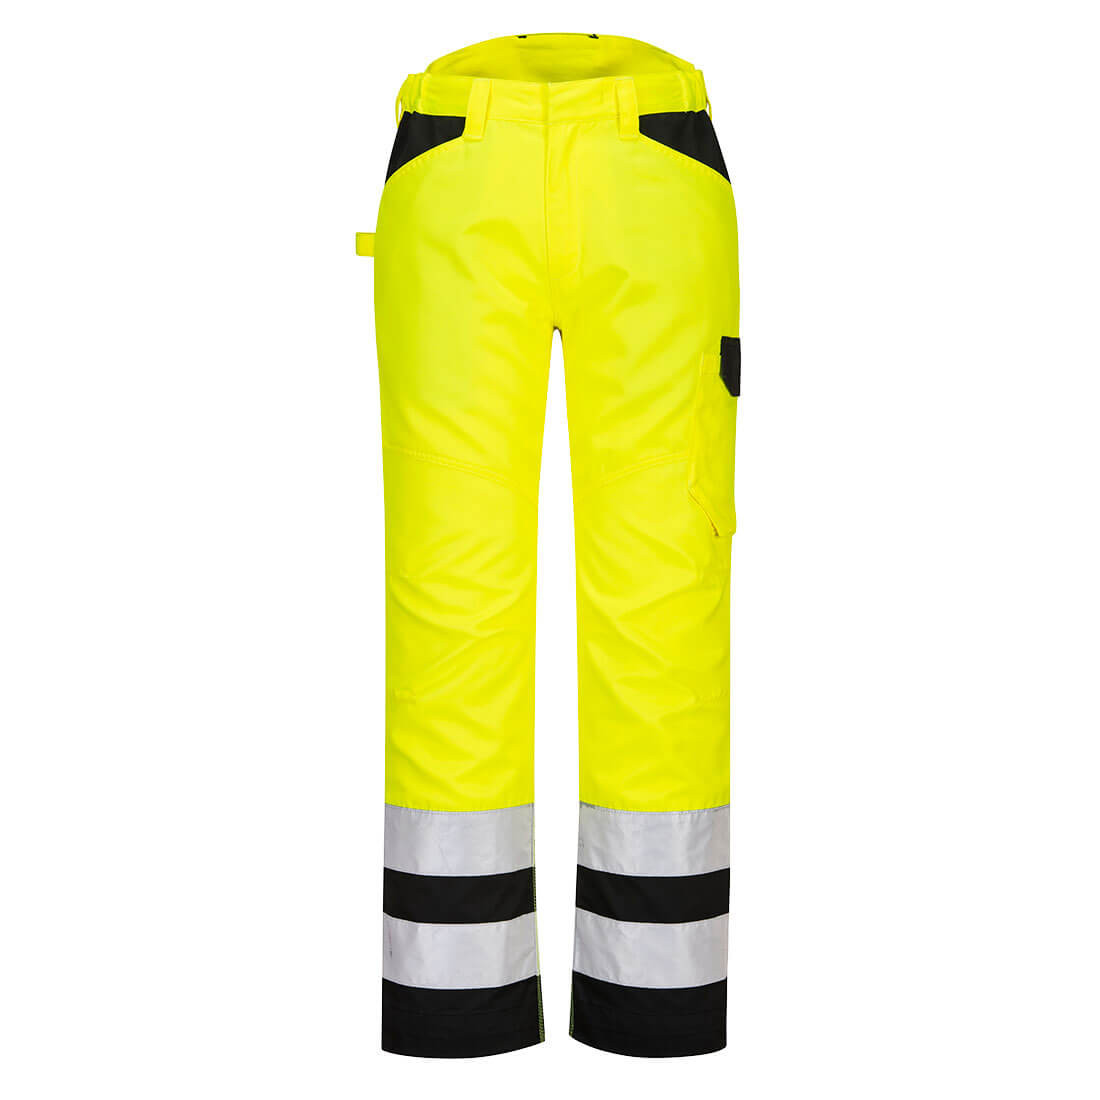 PW2 Pantaloni service ad alta visibilità - Abbigliamento di protezione